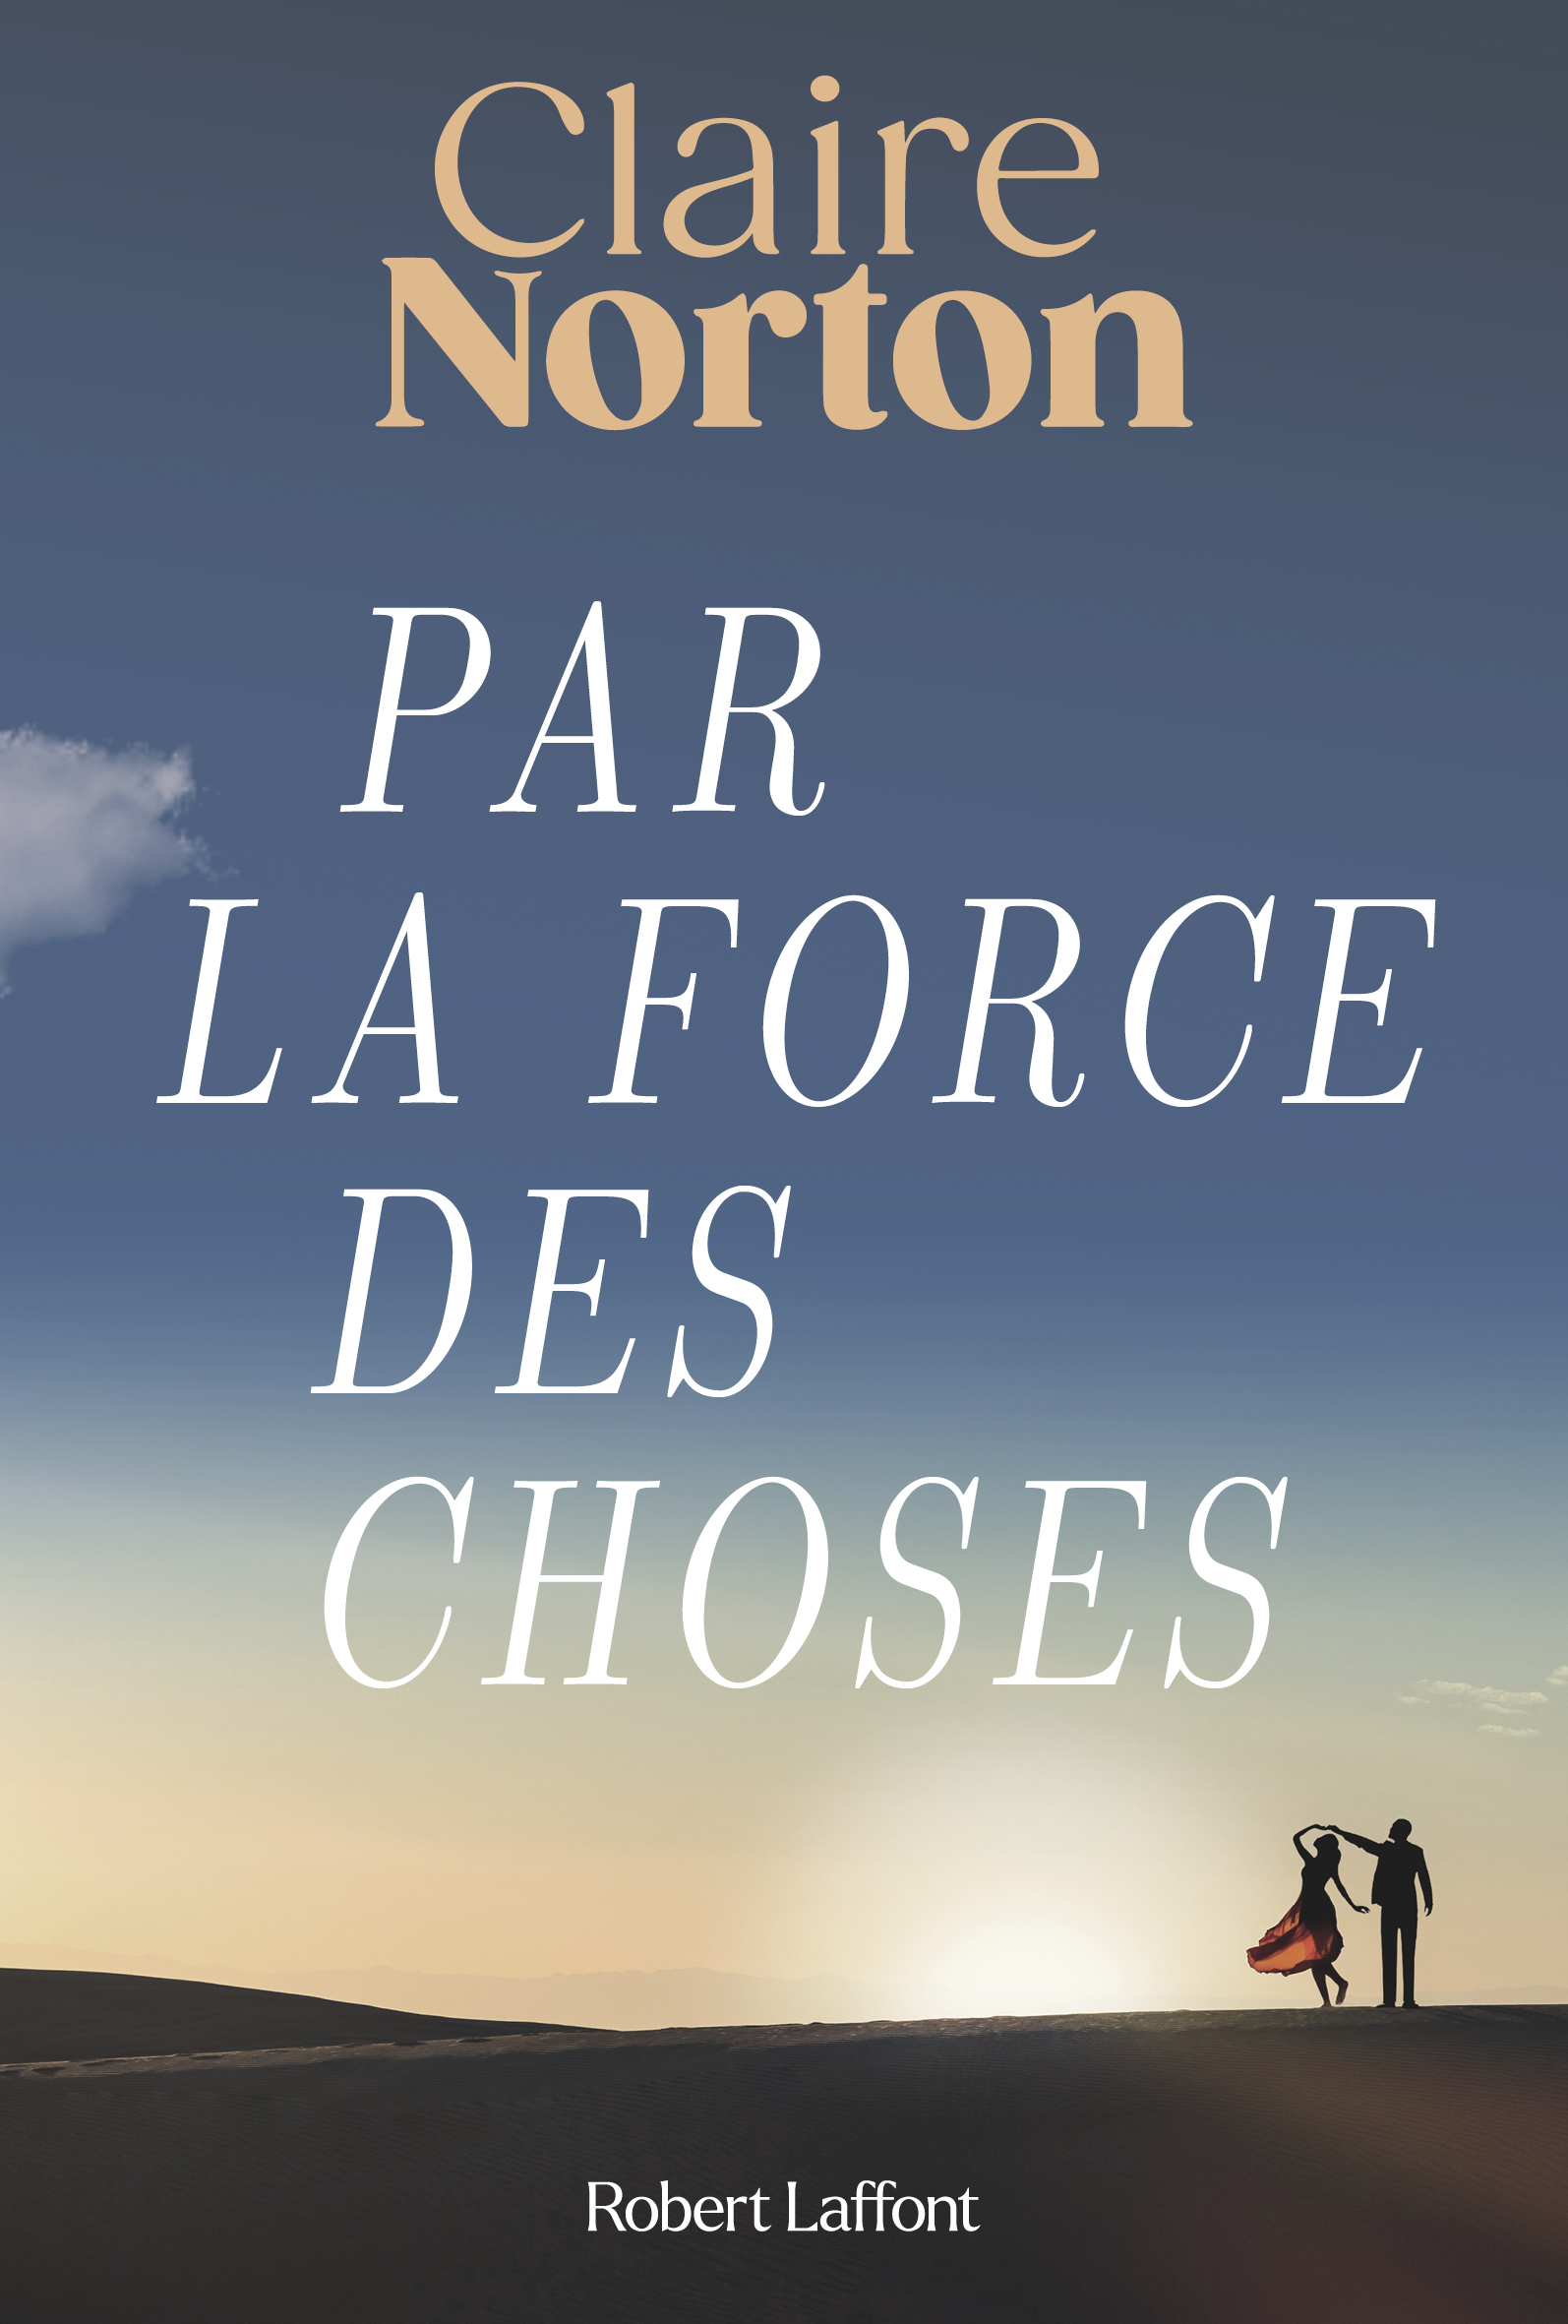 Philippe Besson, Boualem Sansal, Jean-Philippe Blondel… Notre sélection  livres de la semaine - Le Parisien